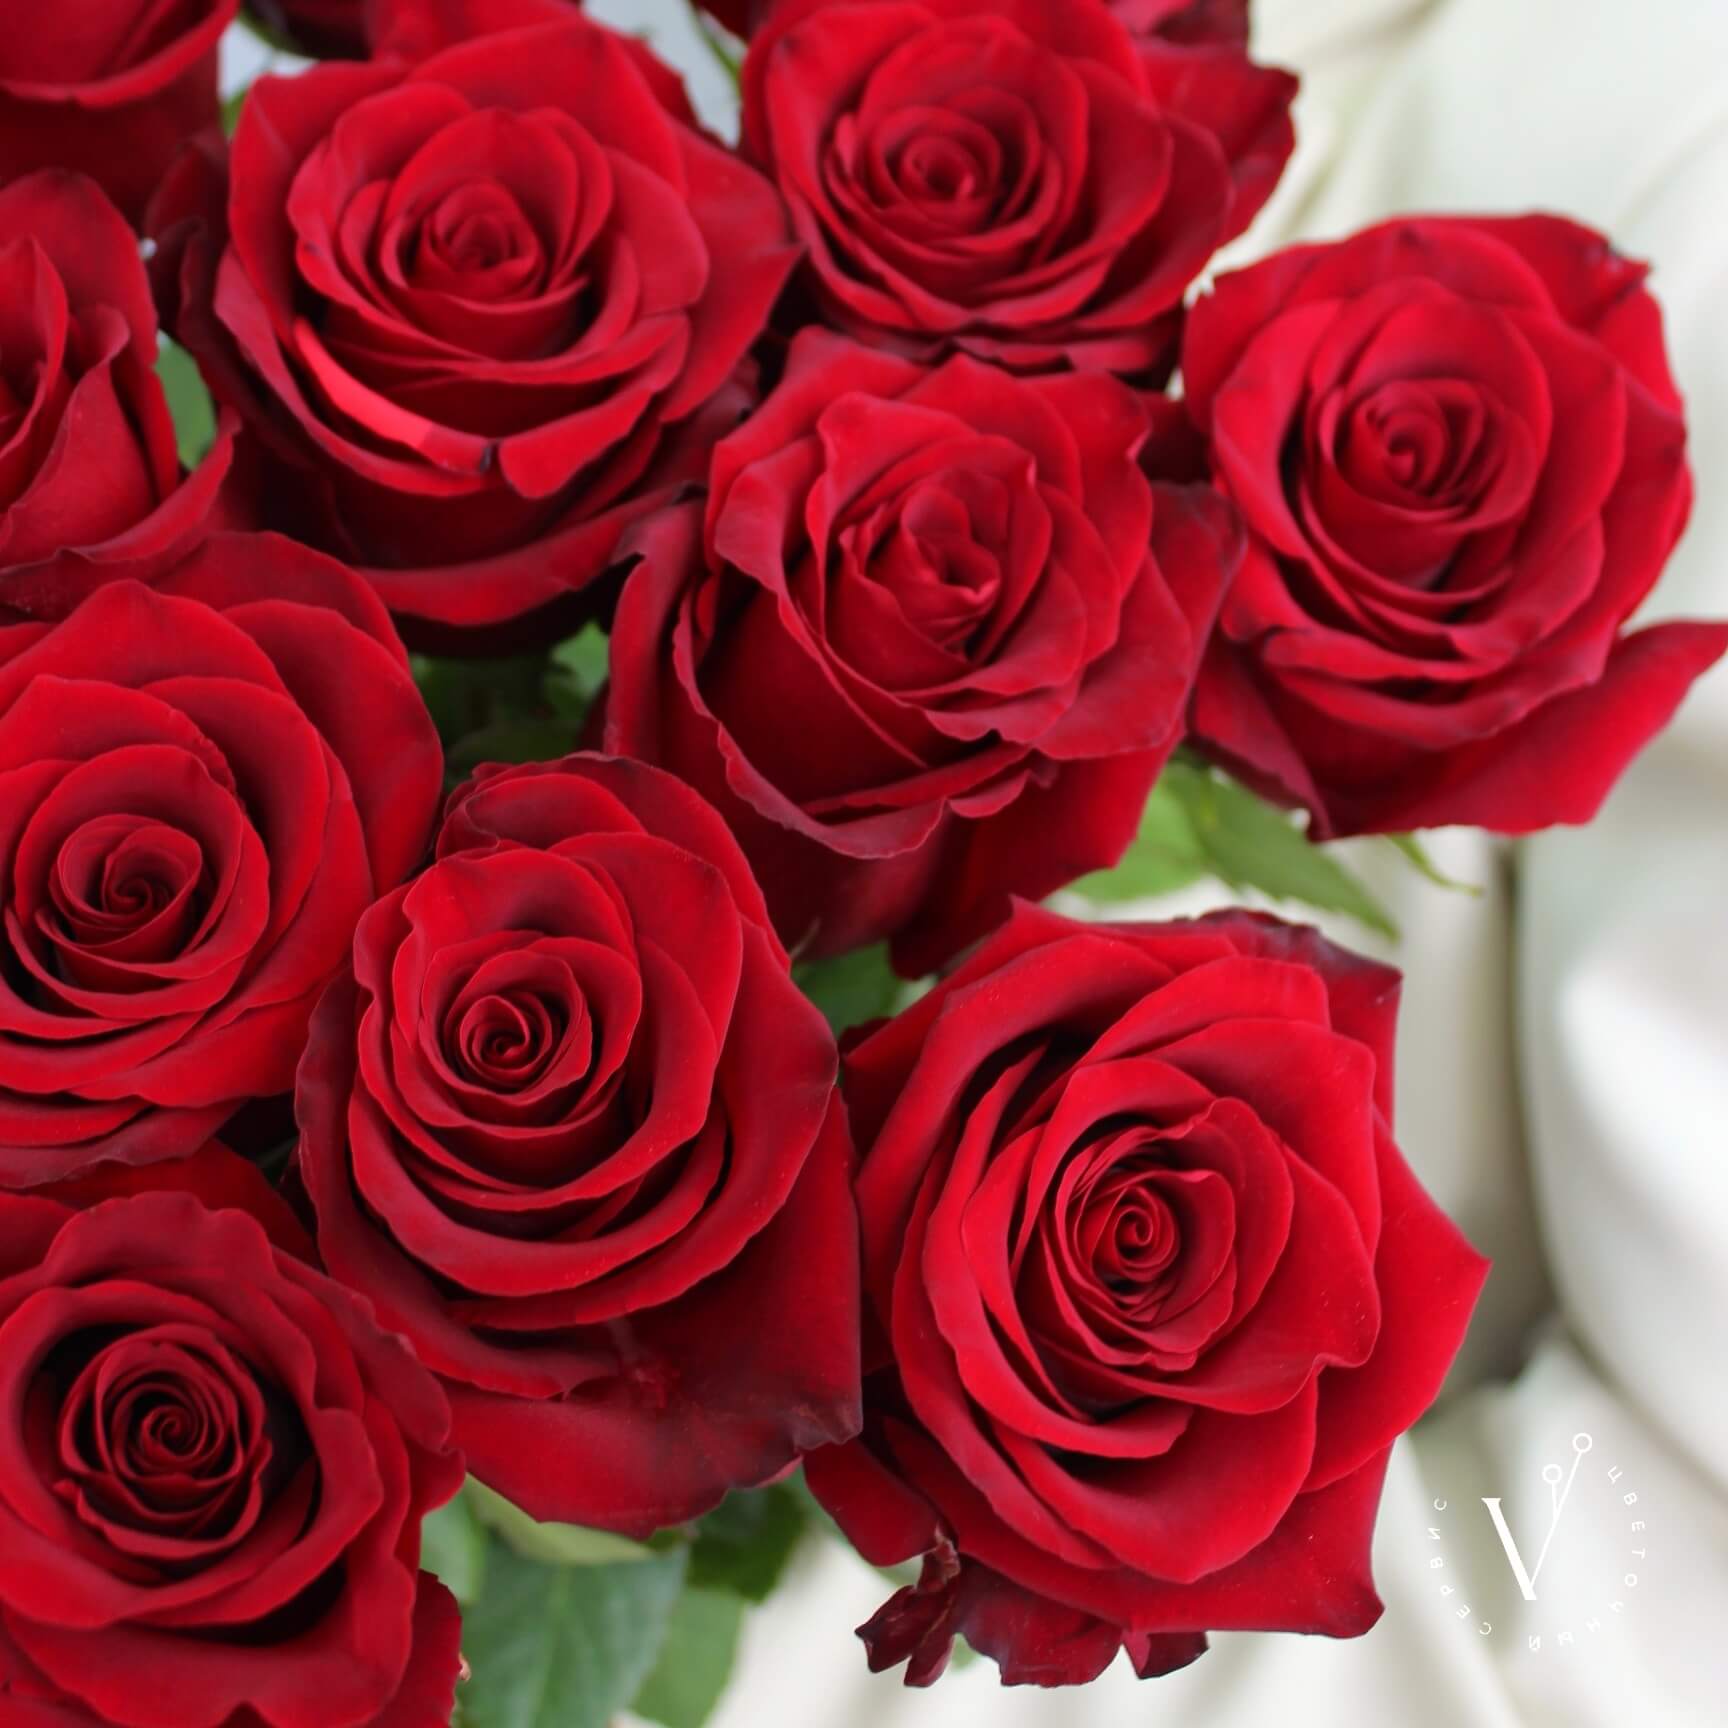 Купить 15 красных импортных роз 80 см в Краснодаре с доставкой.